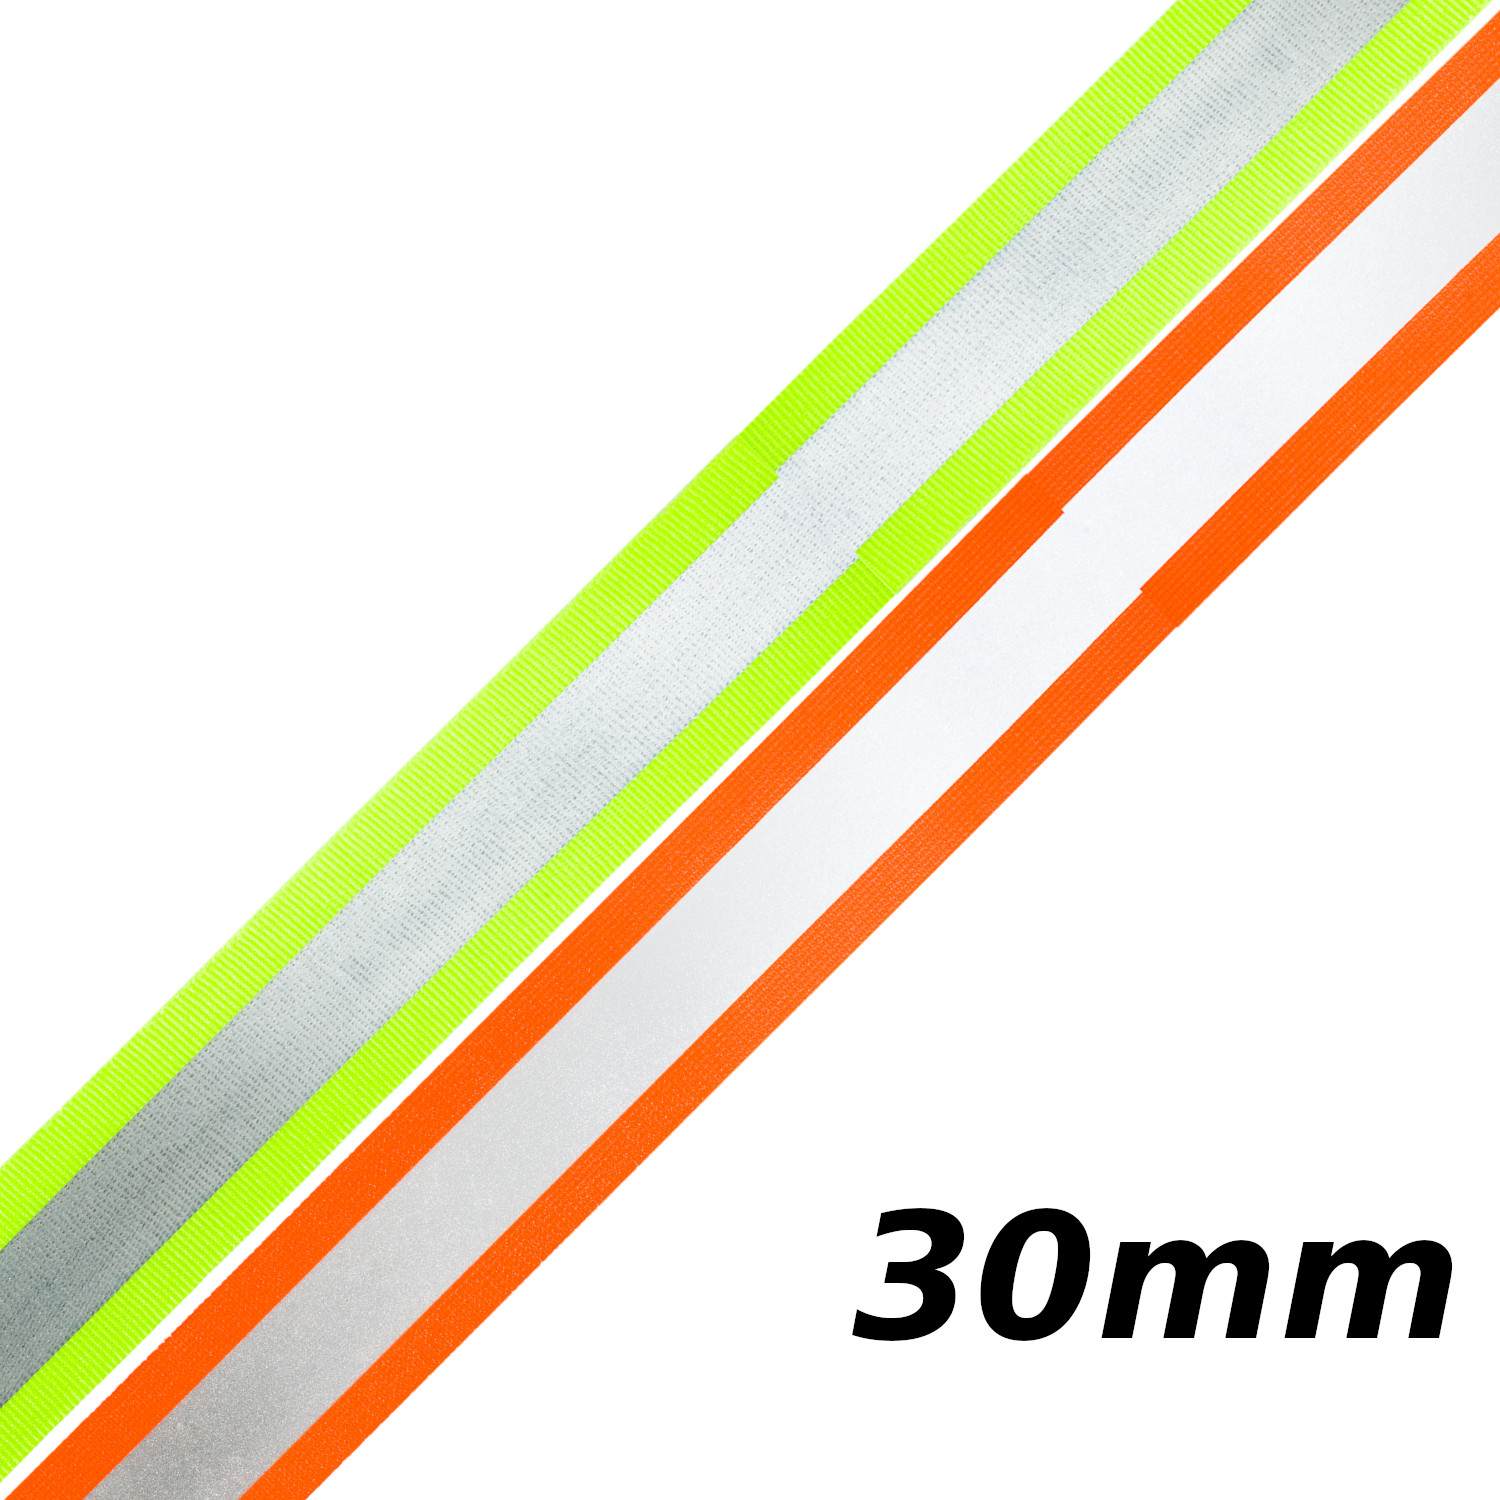 Reflektorband 30mm breit in 3 Farben